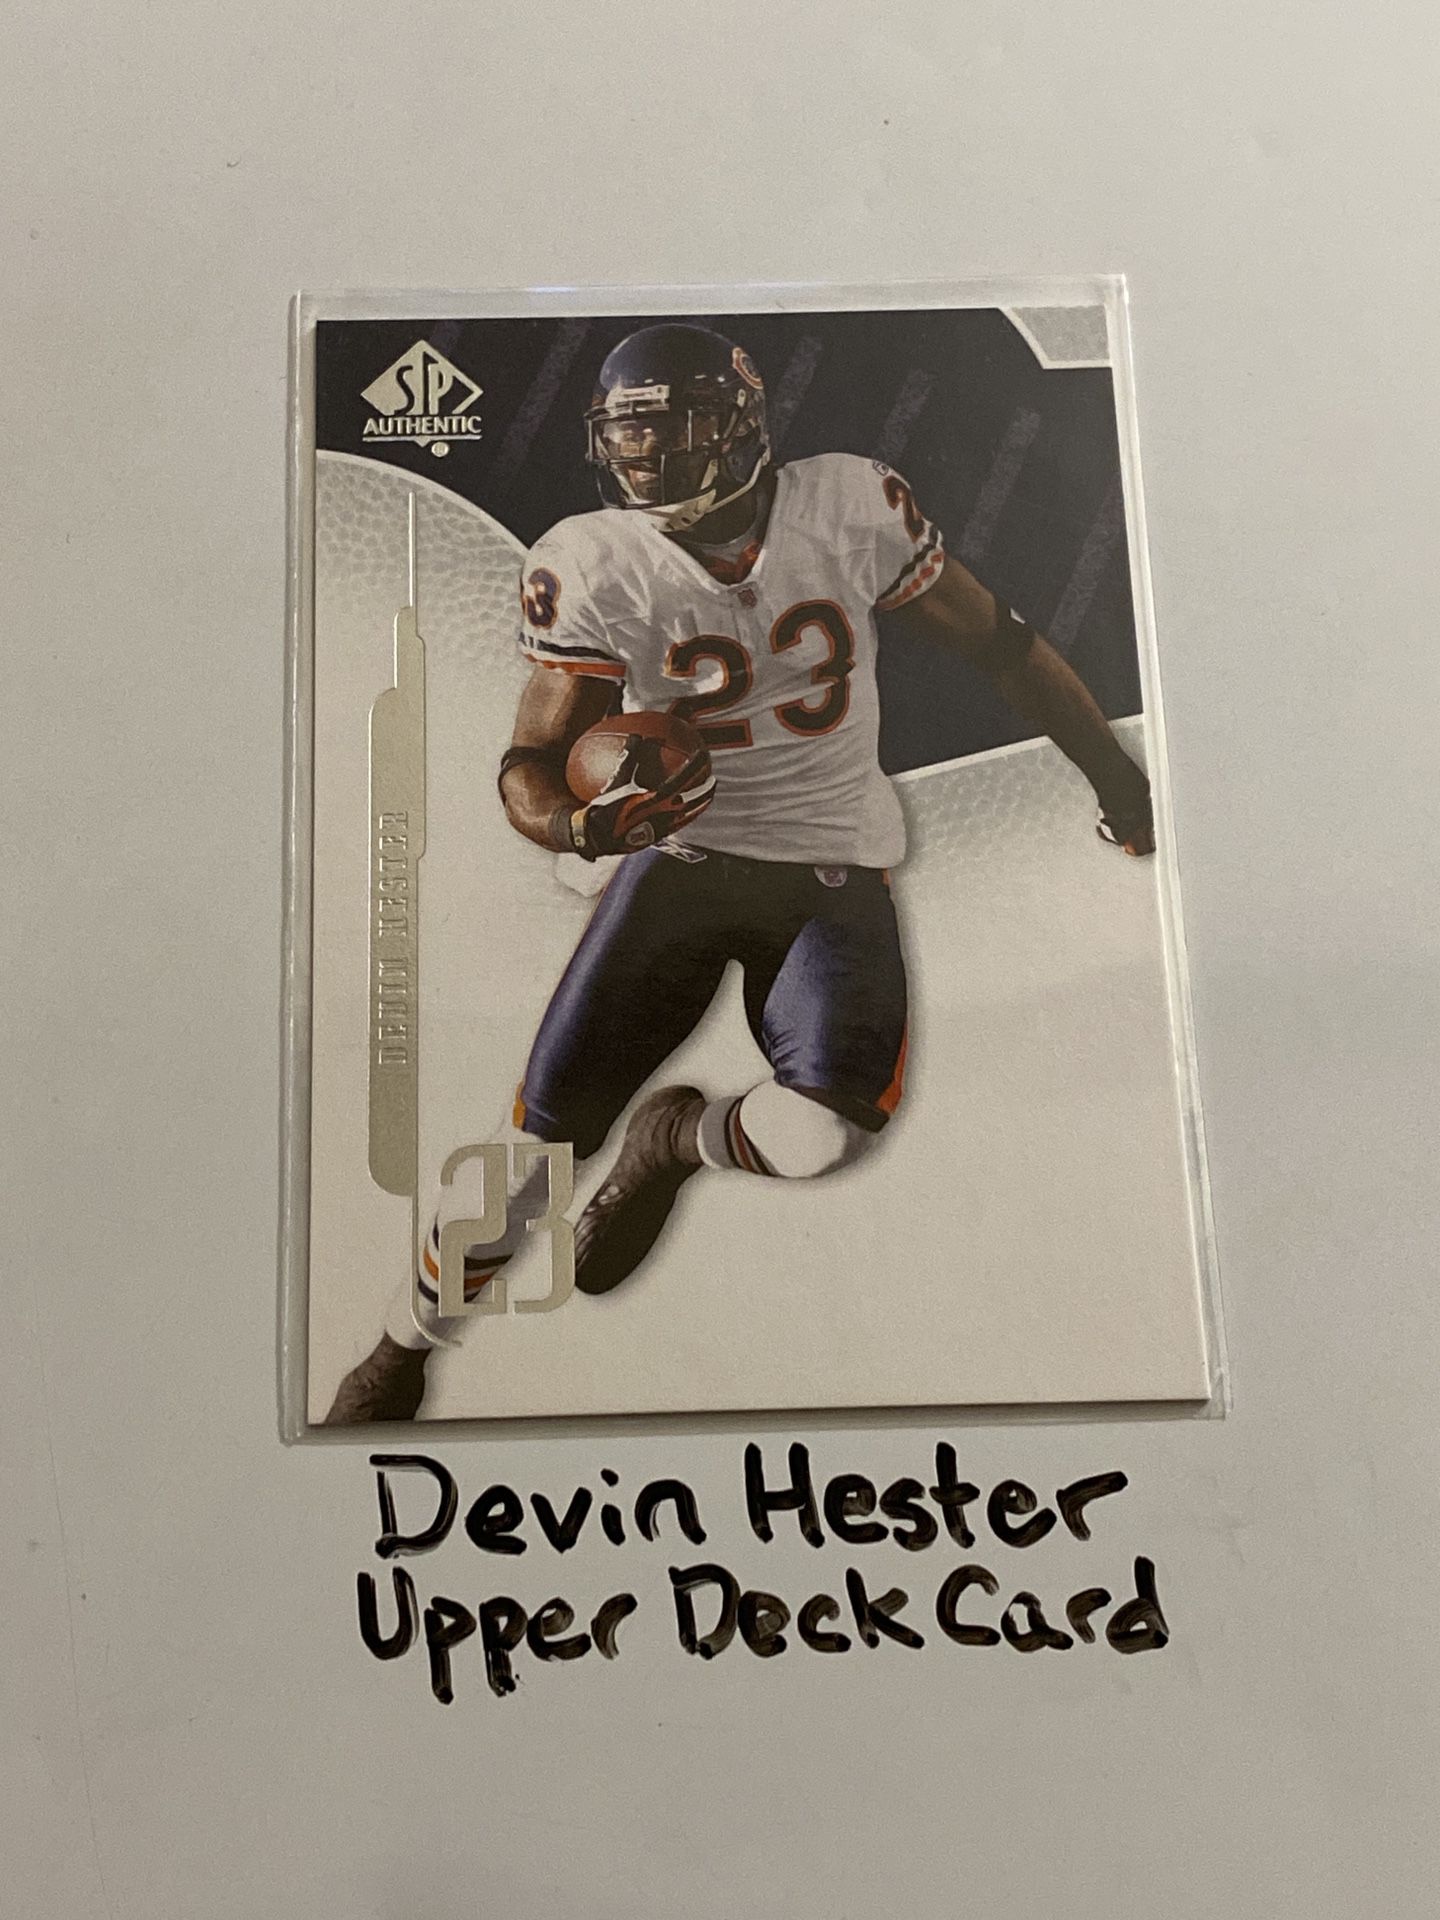 Devin Hester Chicago Bears Hall of Fame KR Upper Deck Card. 